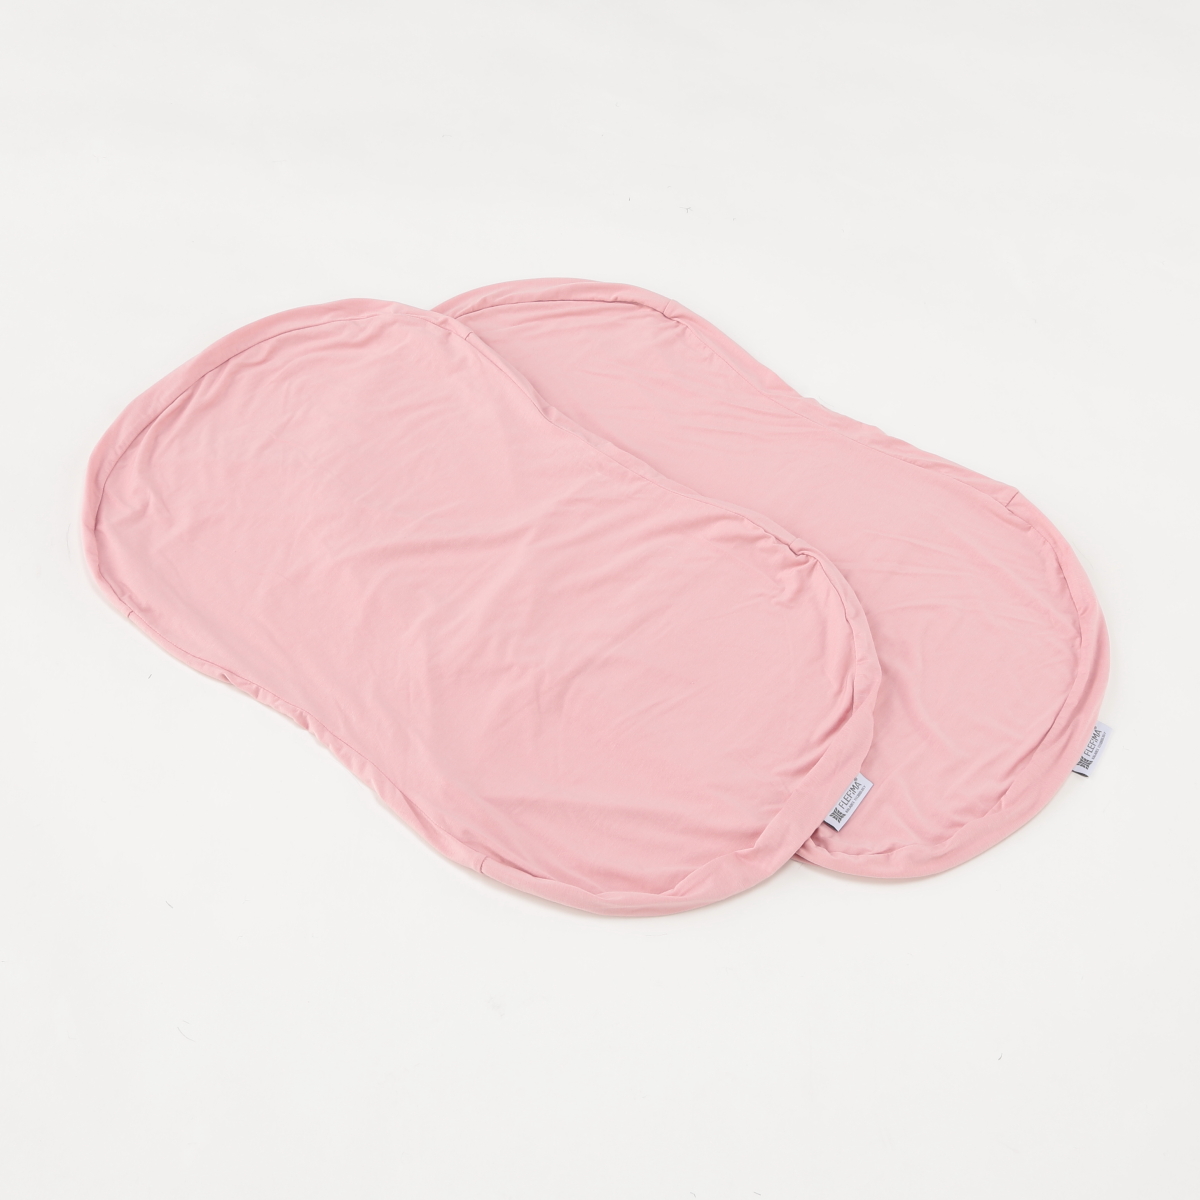 まとめ買いでお得 未使用 新品 夢枕極DX せのぶら本舗限定商品 ピンク 